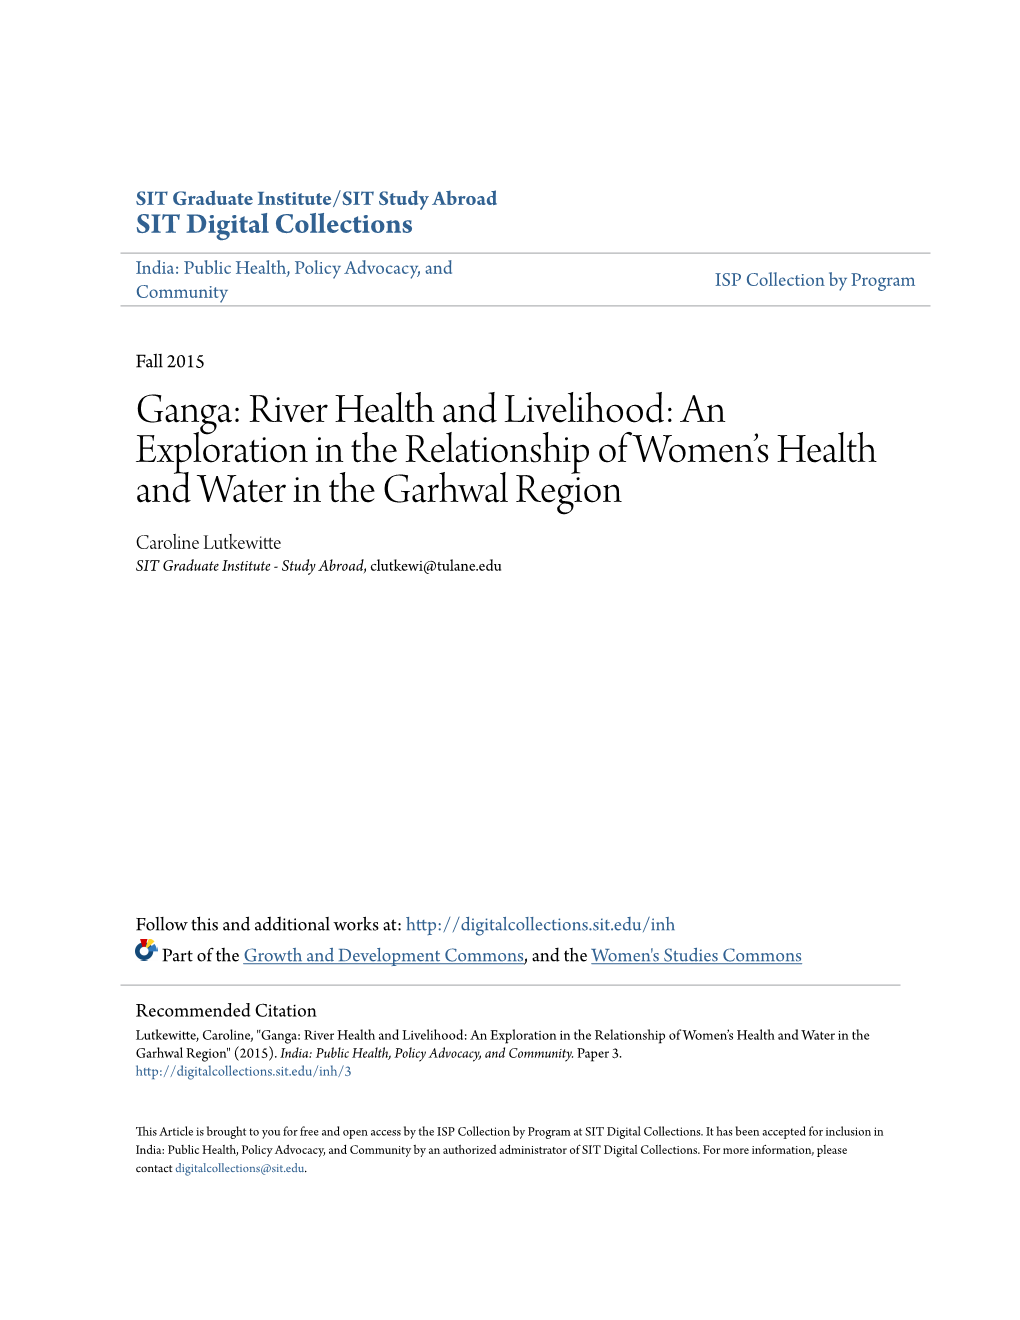 Ganga: River Health and Livelihood